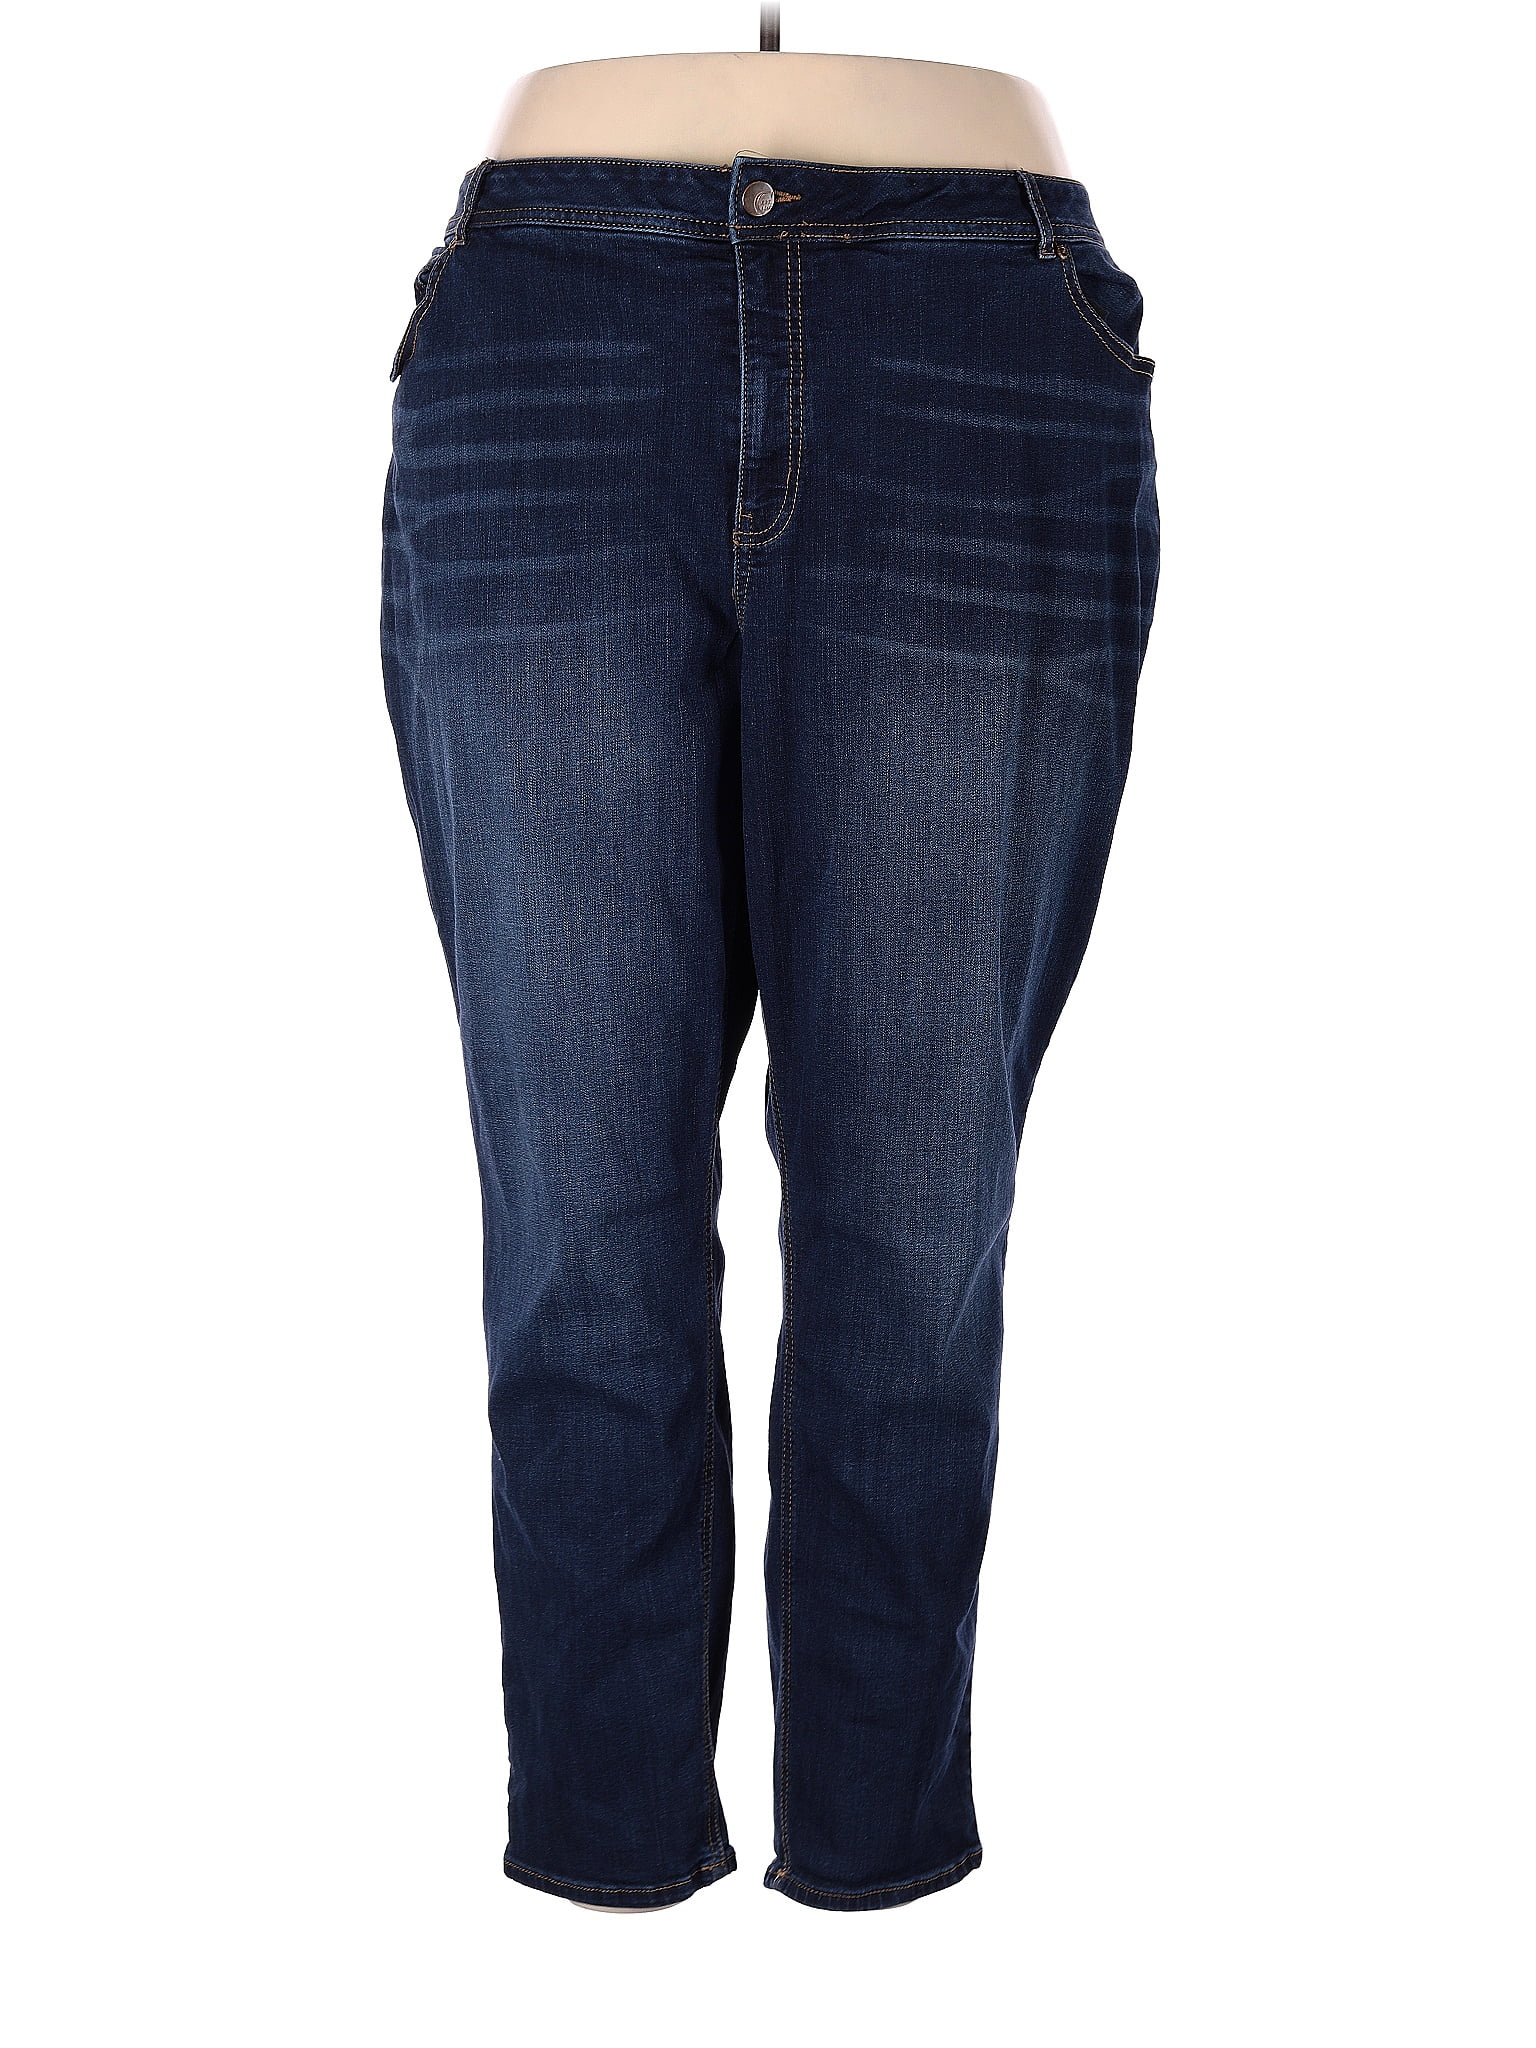 C established 1946 Blue Jeans Size 28 (Plus) - 47% off | thredUP